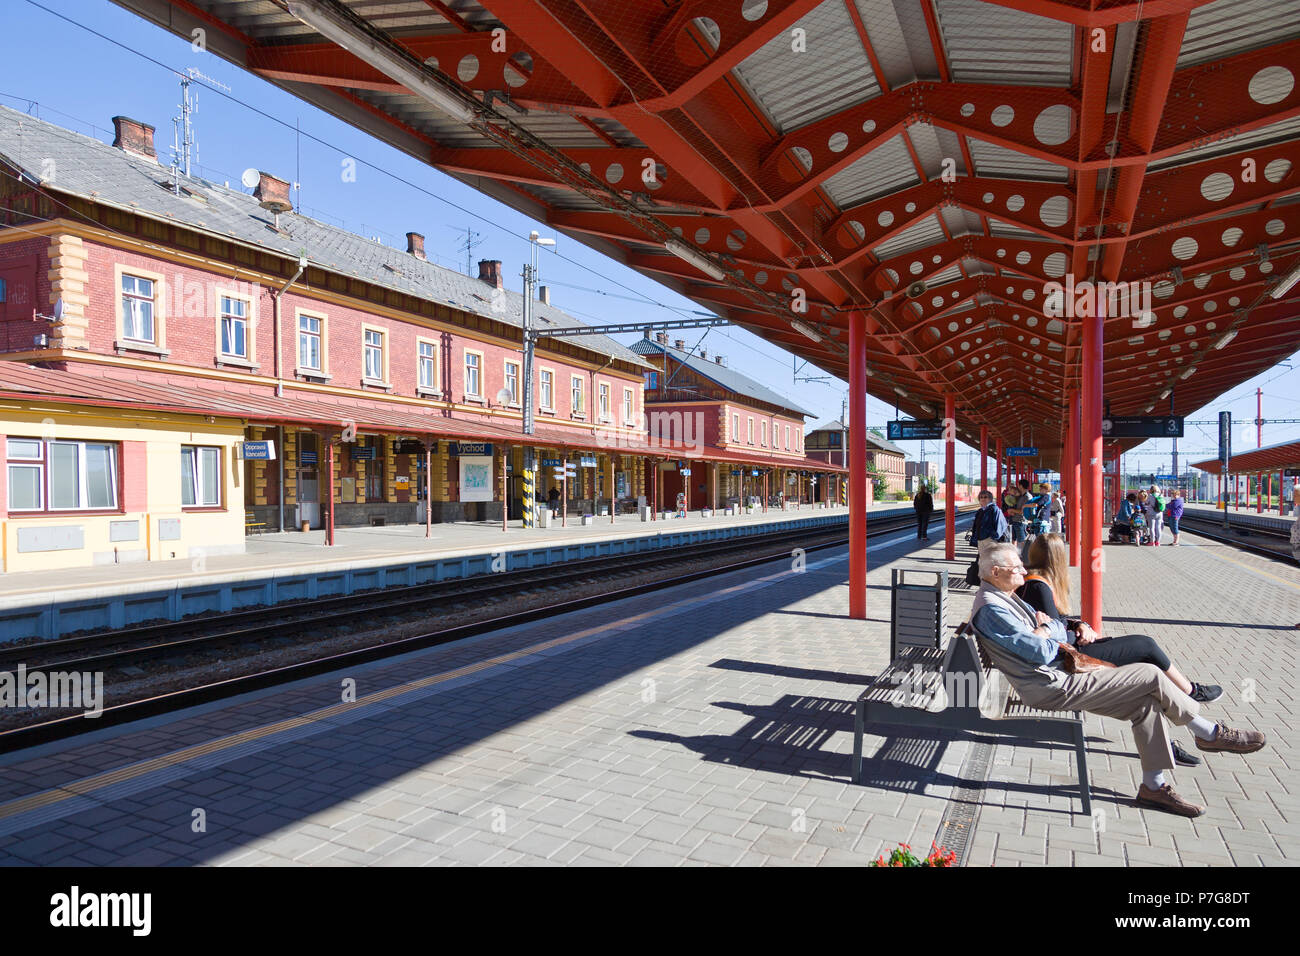 vlakové nádraží, Veselí nad Lužnicí, Česká republika / railway station Veseli nad Luznici, Czech republic Stock Photo